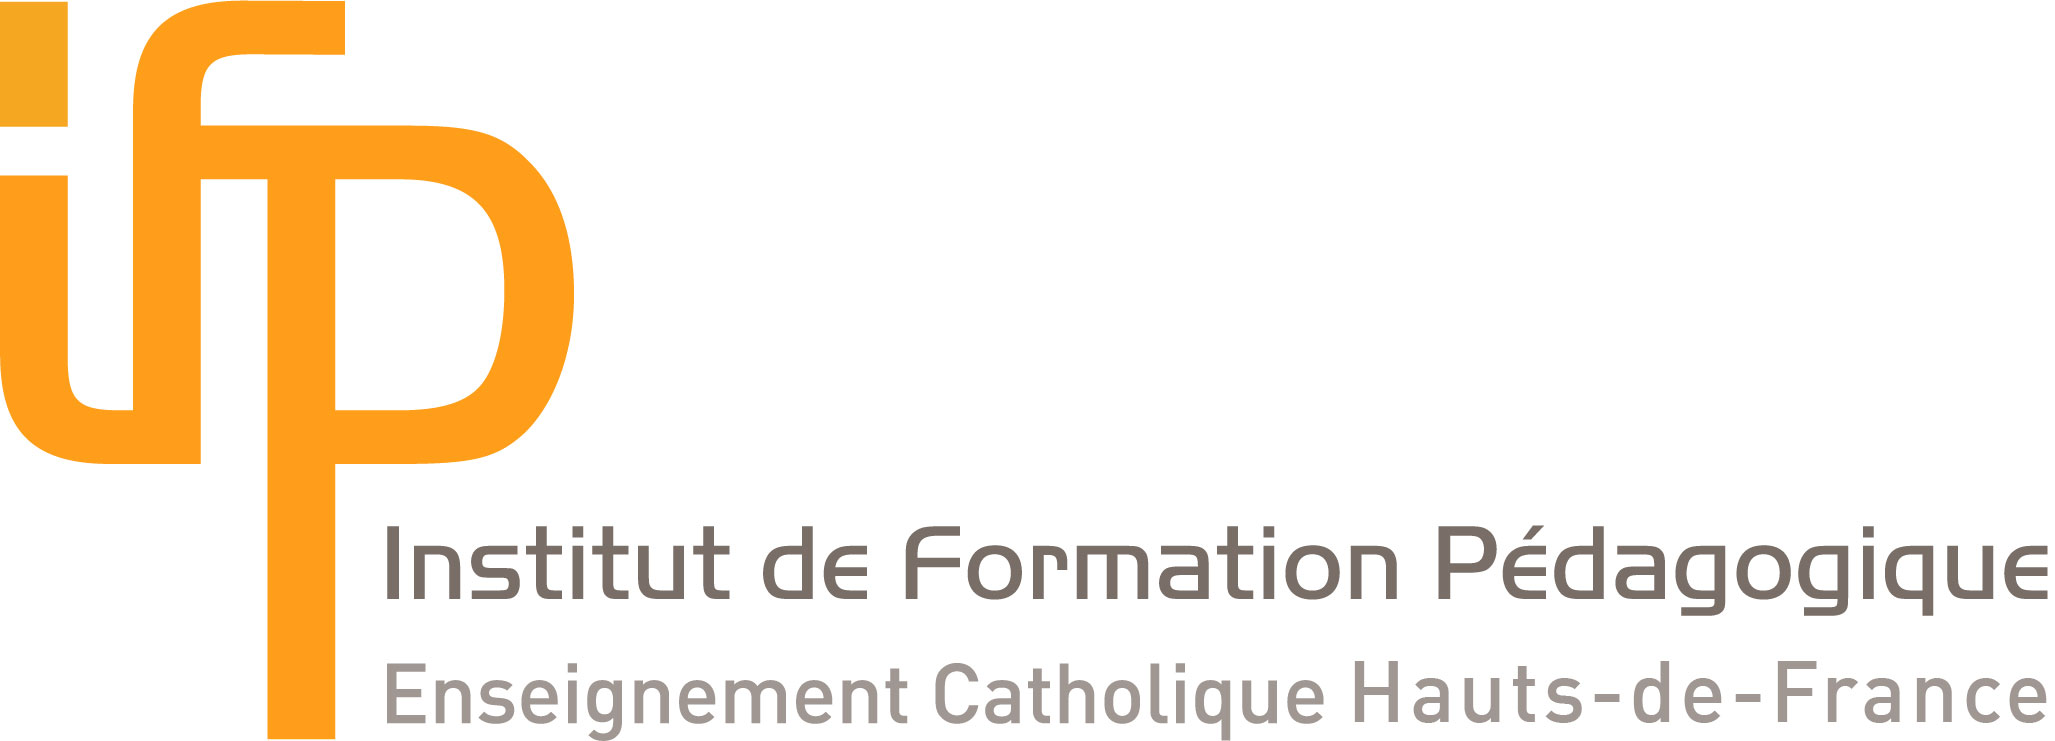 Institut de Formation Pédagogique - Enseignement Catholique Hauts-de-France | Université Catholique de Lille